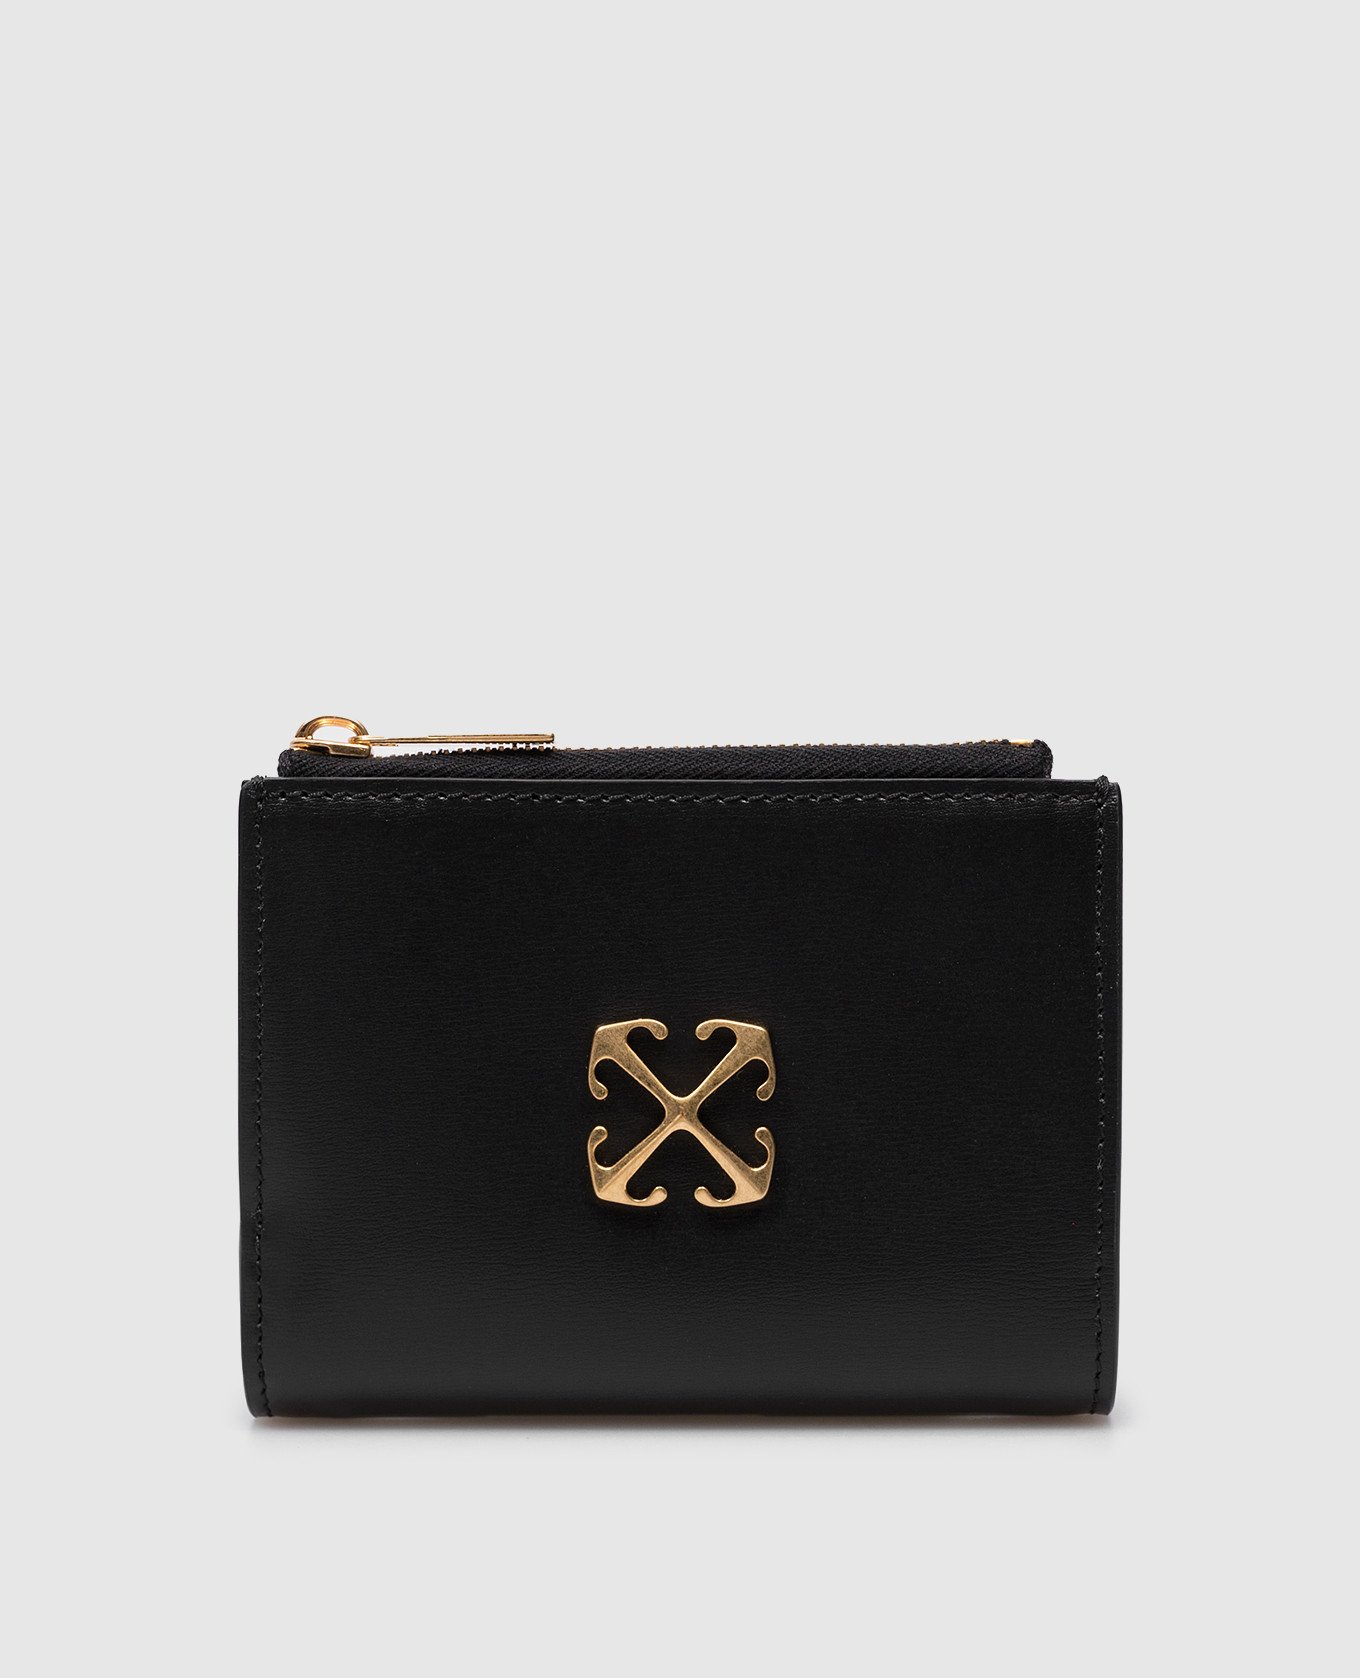 Black wallet with Arrow logo emblem